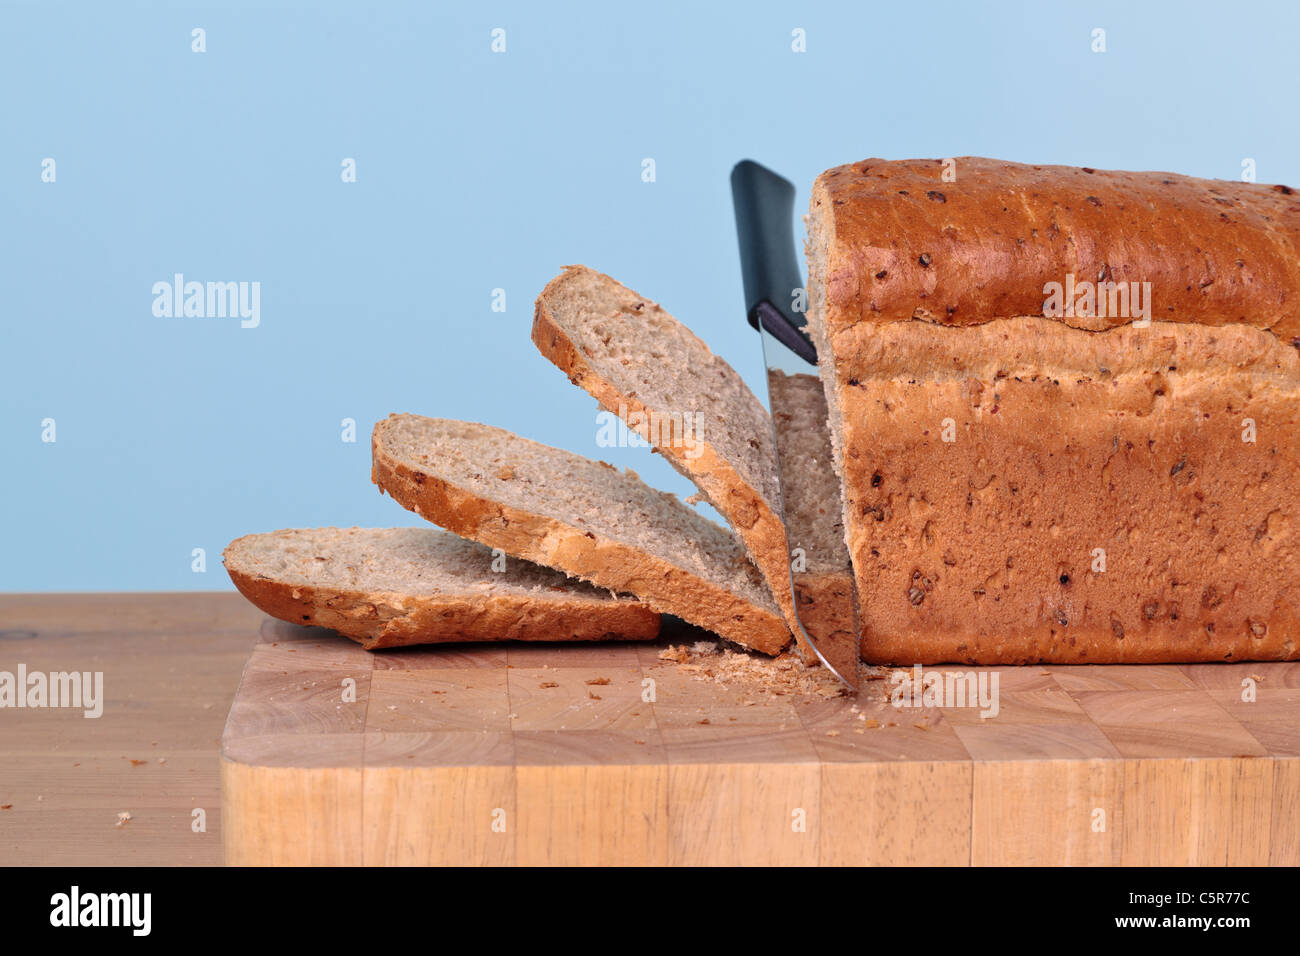 Foto di integrale di una pagnotta di pane tagliata con un coltello. Foto Stock